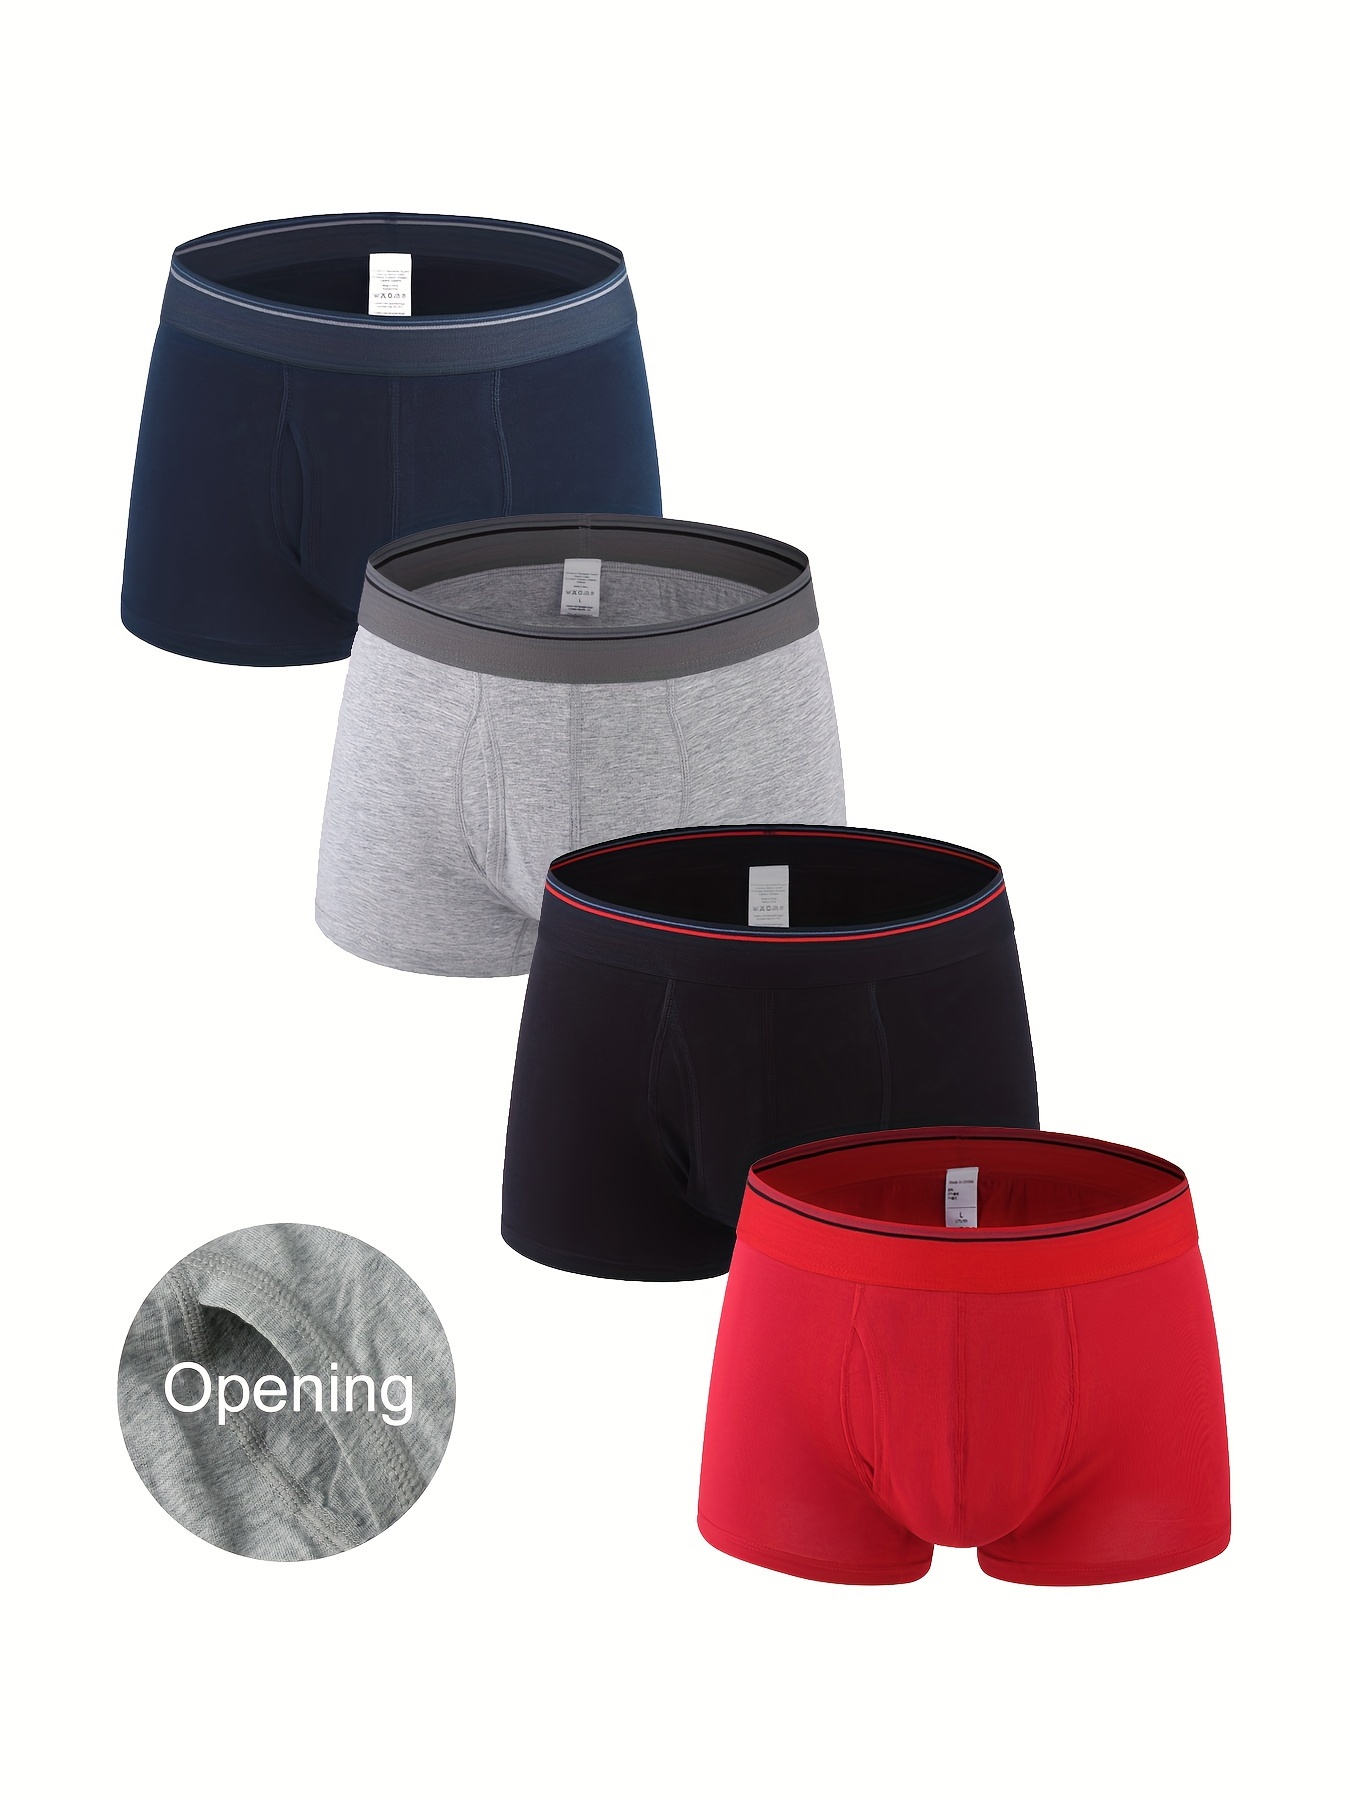 Men's Cotton Long Leg Boxer Briefs Men's Simple Solid Color - Temu